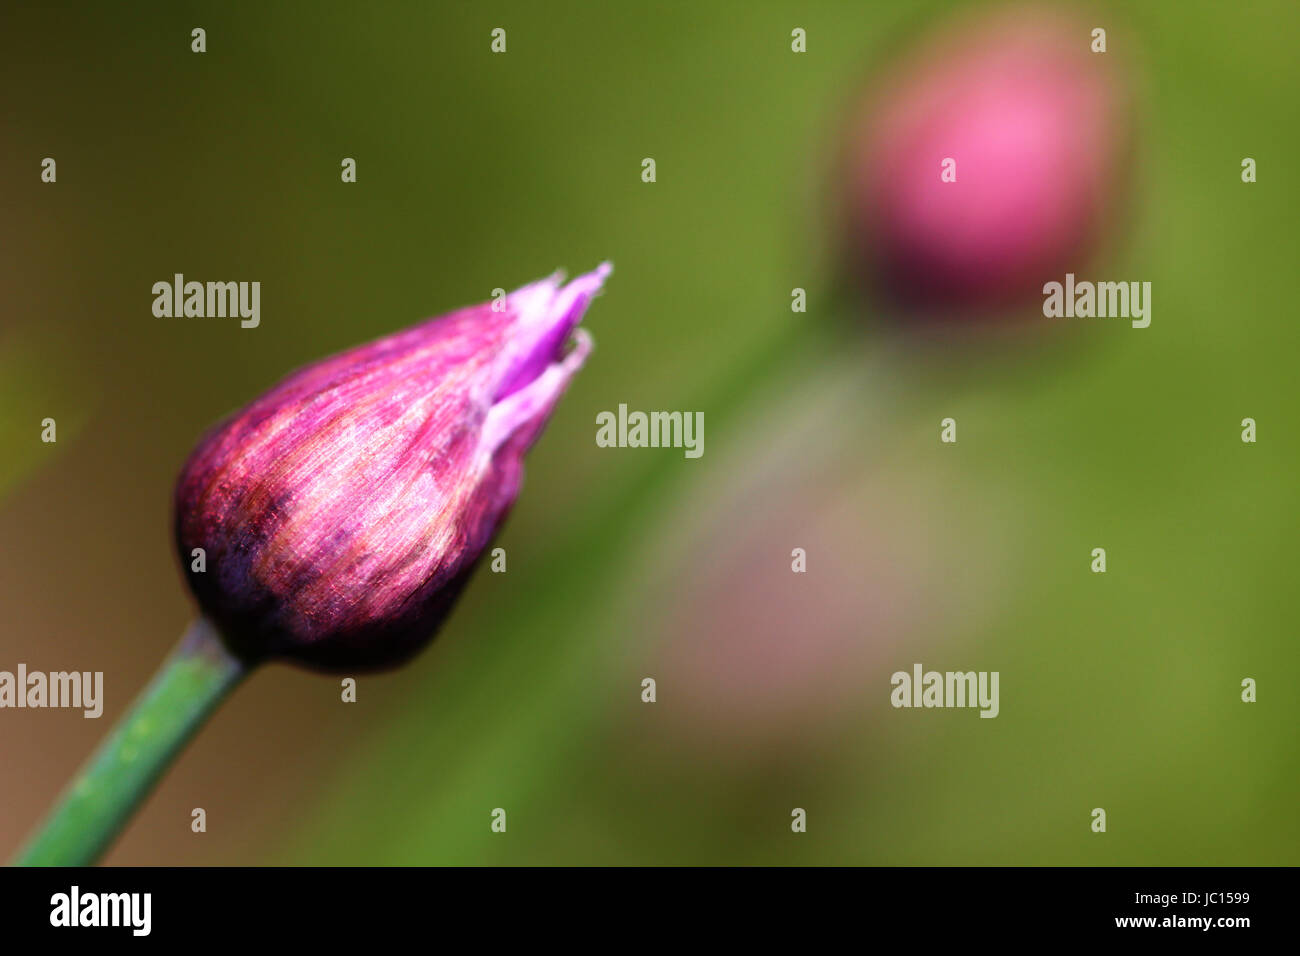 Das Bild zeigt zwei geschlossene Schnittlauch-Blüten. Eine klar im Fordergrund und eine sehr verschwommen im Hintergrund. Die Hintergrundfarbe ist grün, die Blüten sind in lilanen und rosanen Farbtönen. Stock Photo